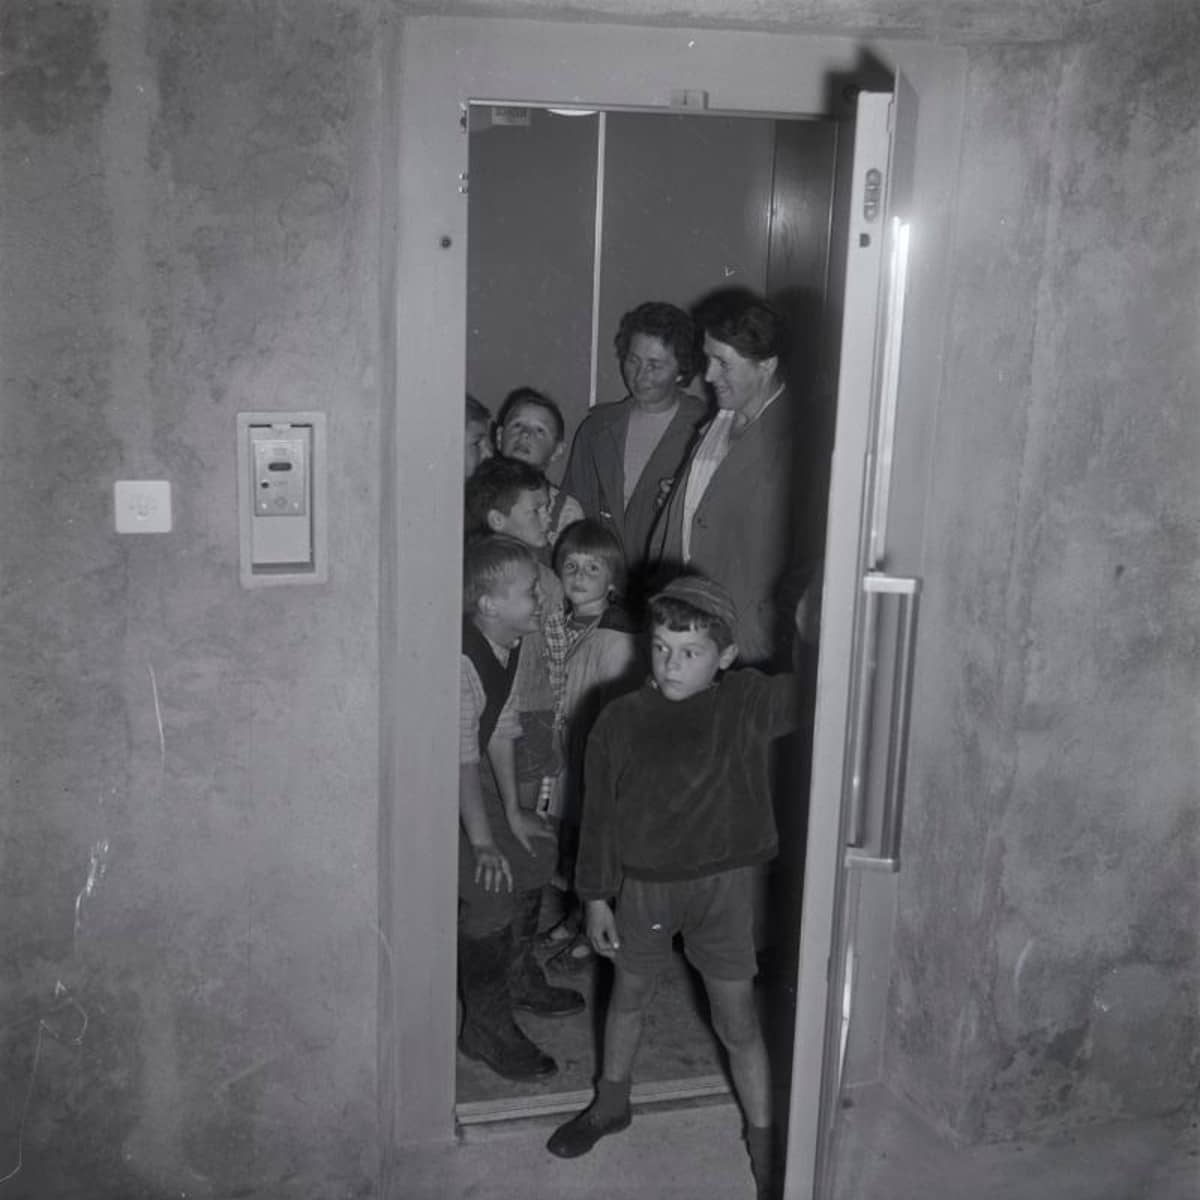 Erwachsenen und Kinder in einem Lift, ein Knabe im Vordergrund schliesst die Lifttür von innen. Aarburg, August 1960.